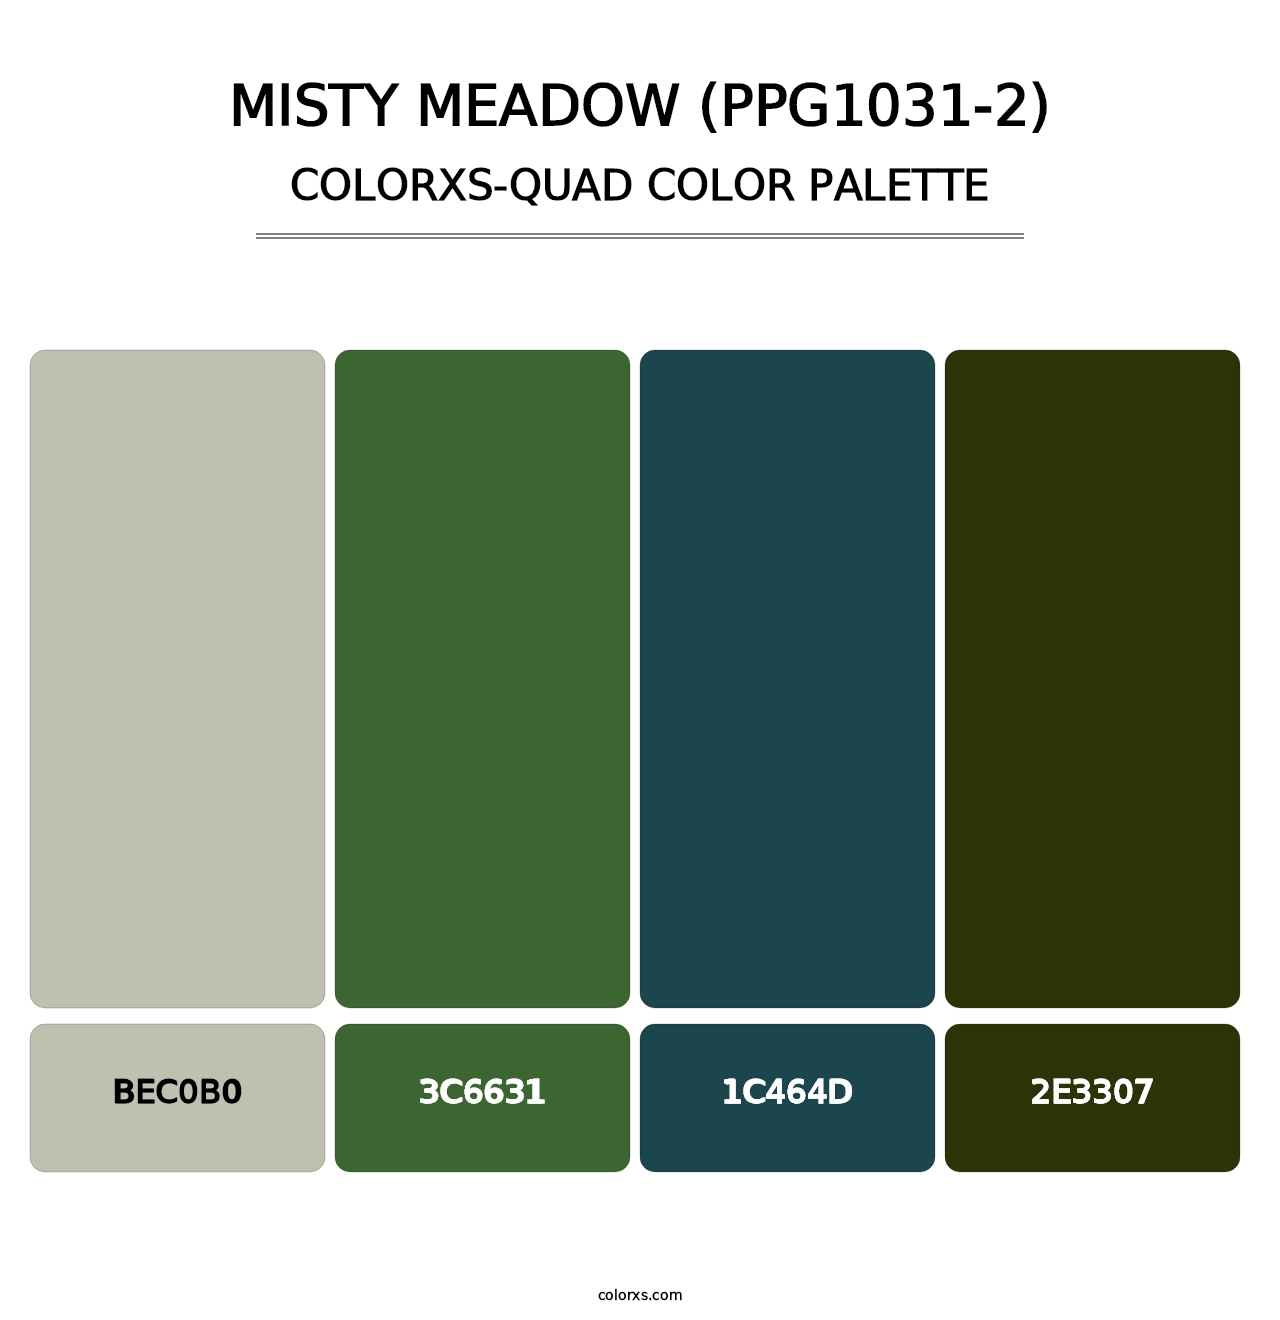 Misty Meadow (PPG1031-2) - Colorxs Quad Palette